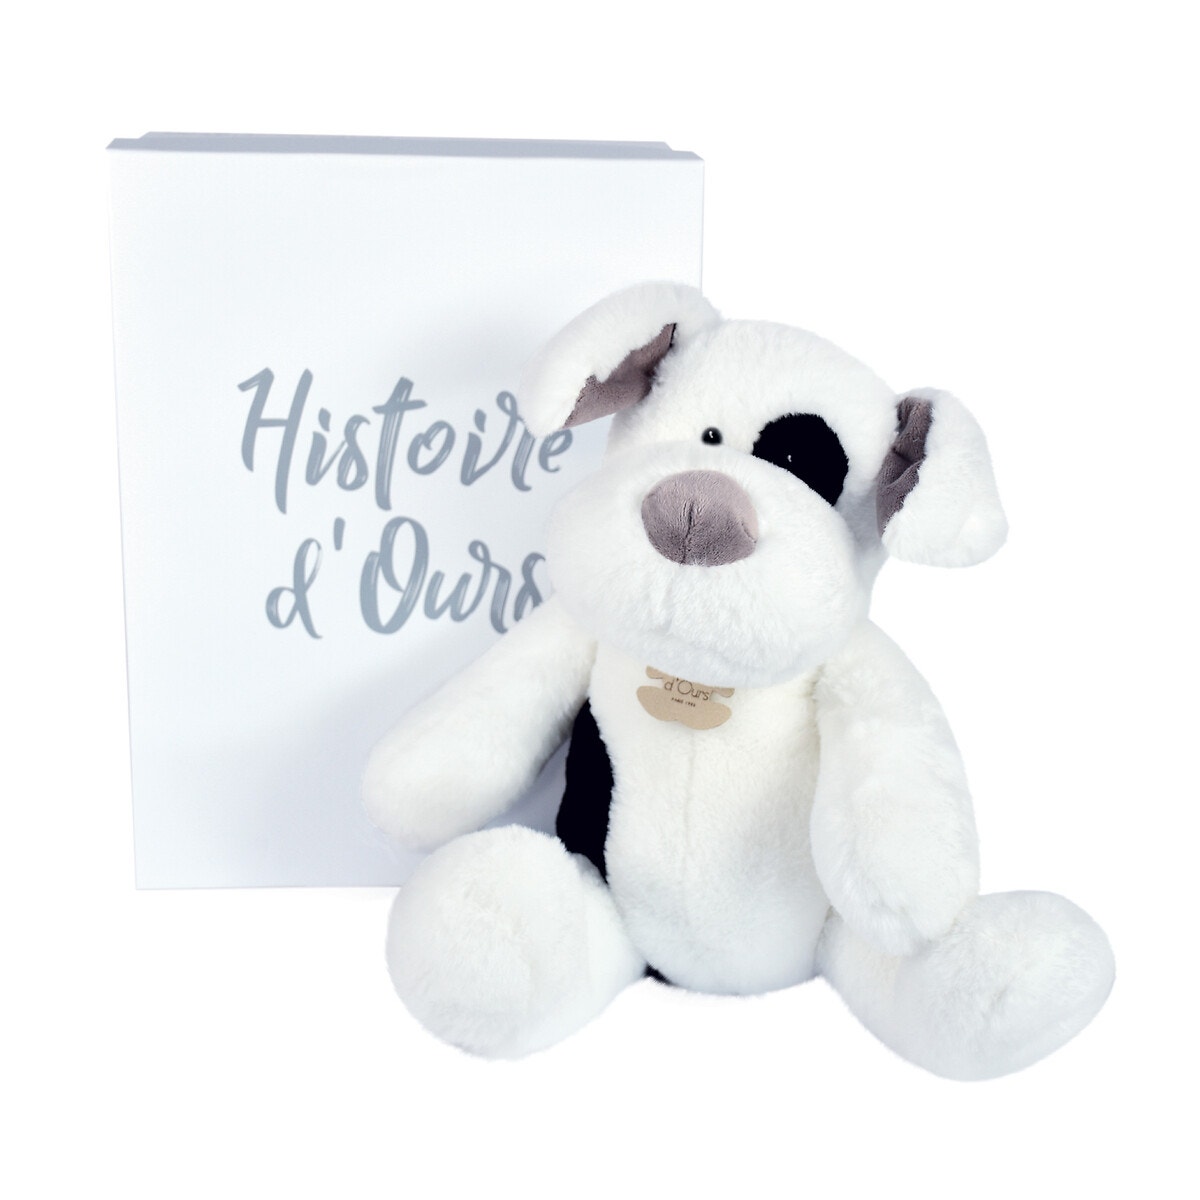 Histoire d'ours - Peluche Chien Blanc - 25 cm